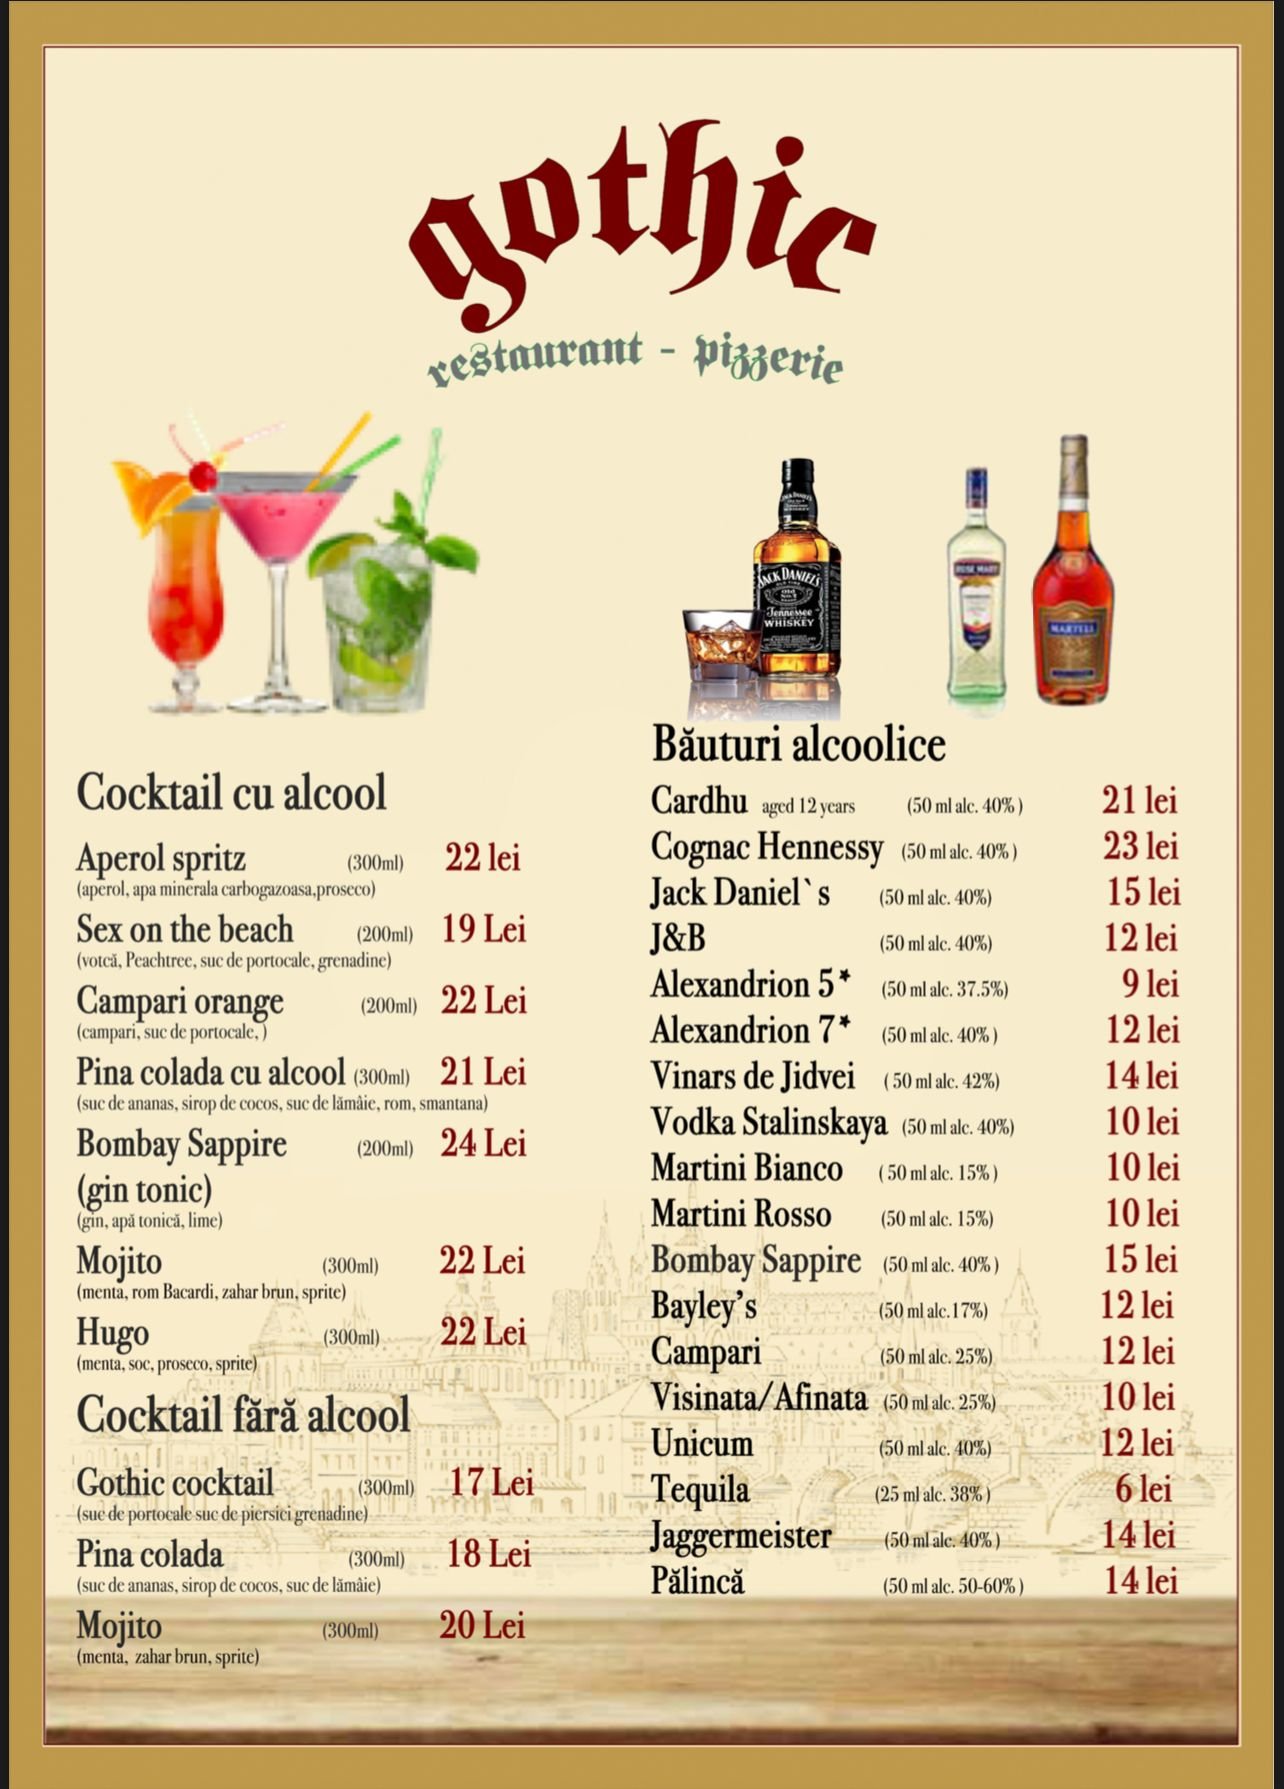 Alcoholic cocktails/Non-alcoholic cocktails/Alcoholic beverages